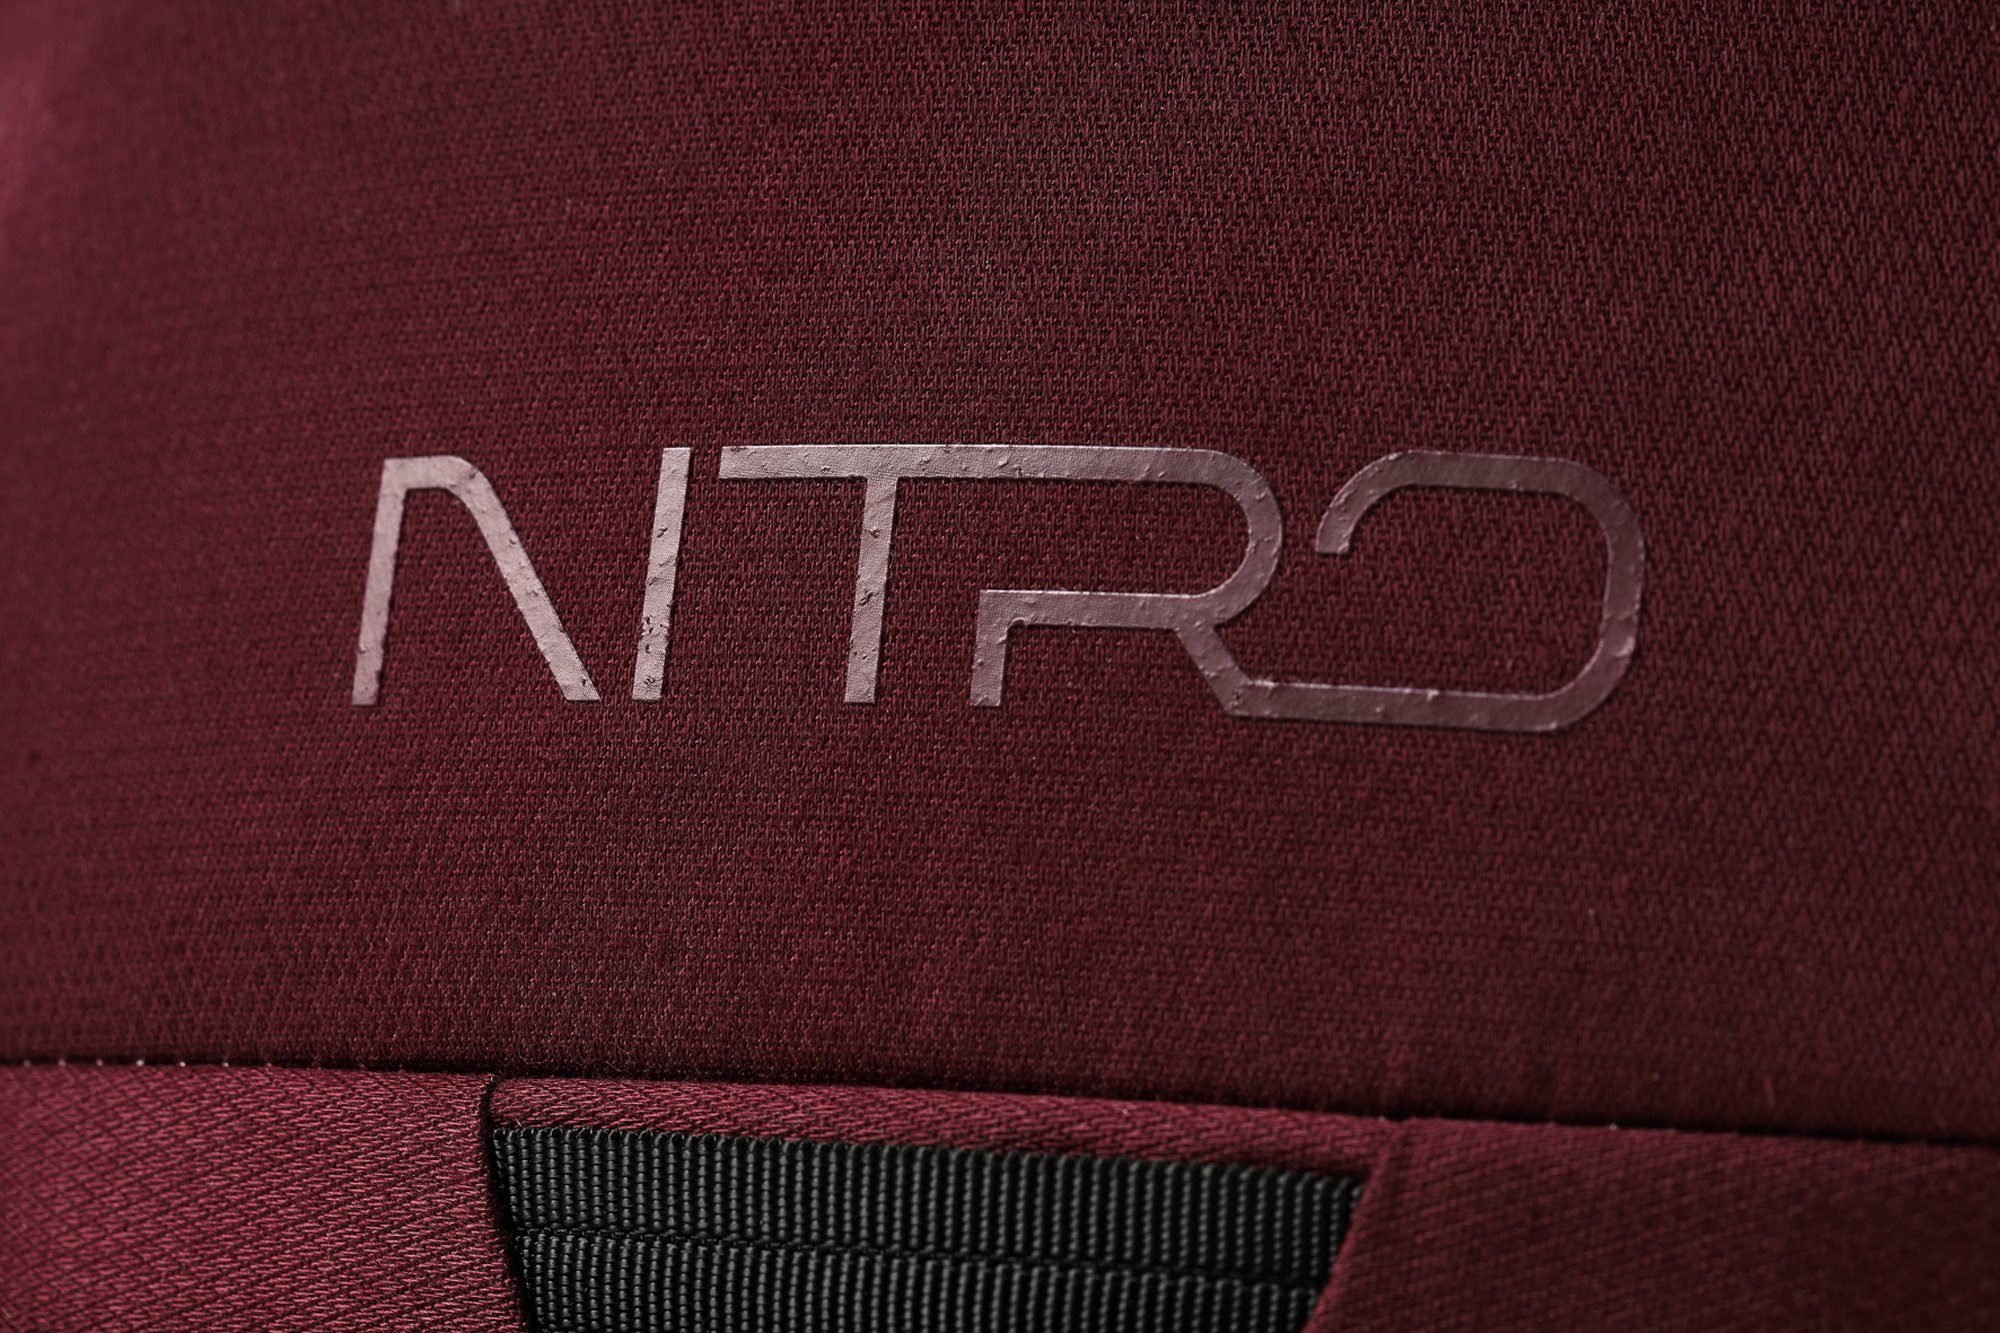 14, Wine, Rover speziell für NITRO den Trekkingrucksack konzipiert Wintersport